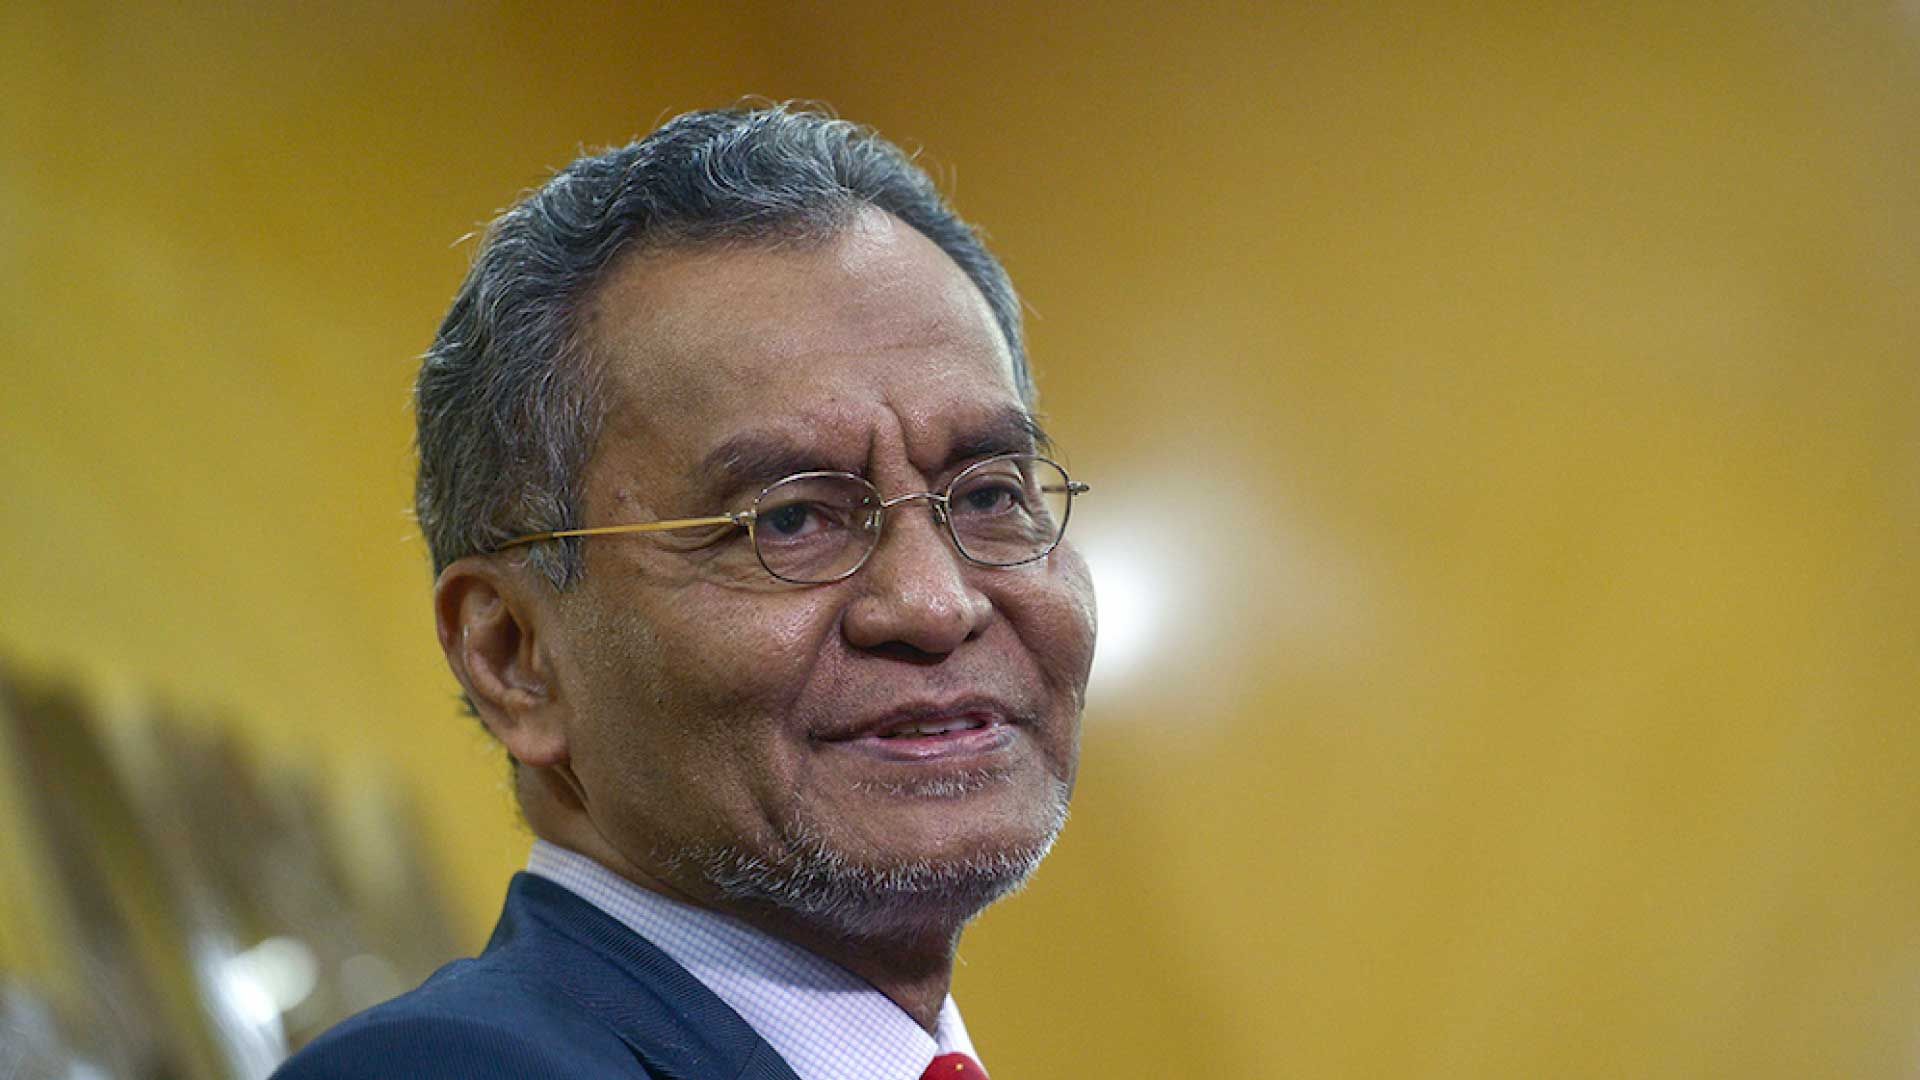 Dzulkefly Ahmad Kuala Selangor MP